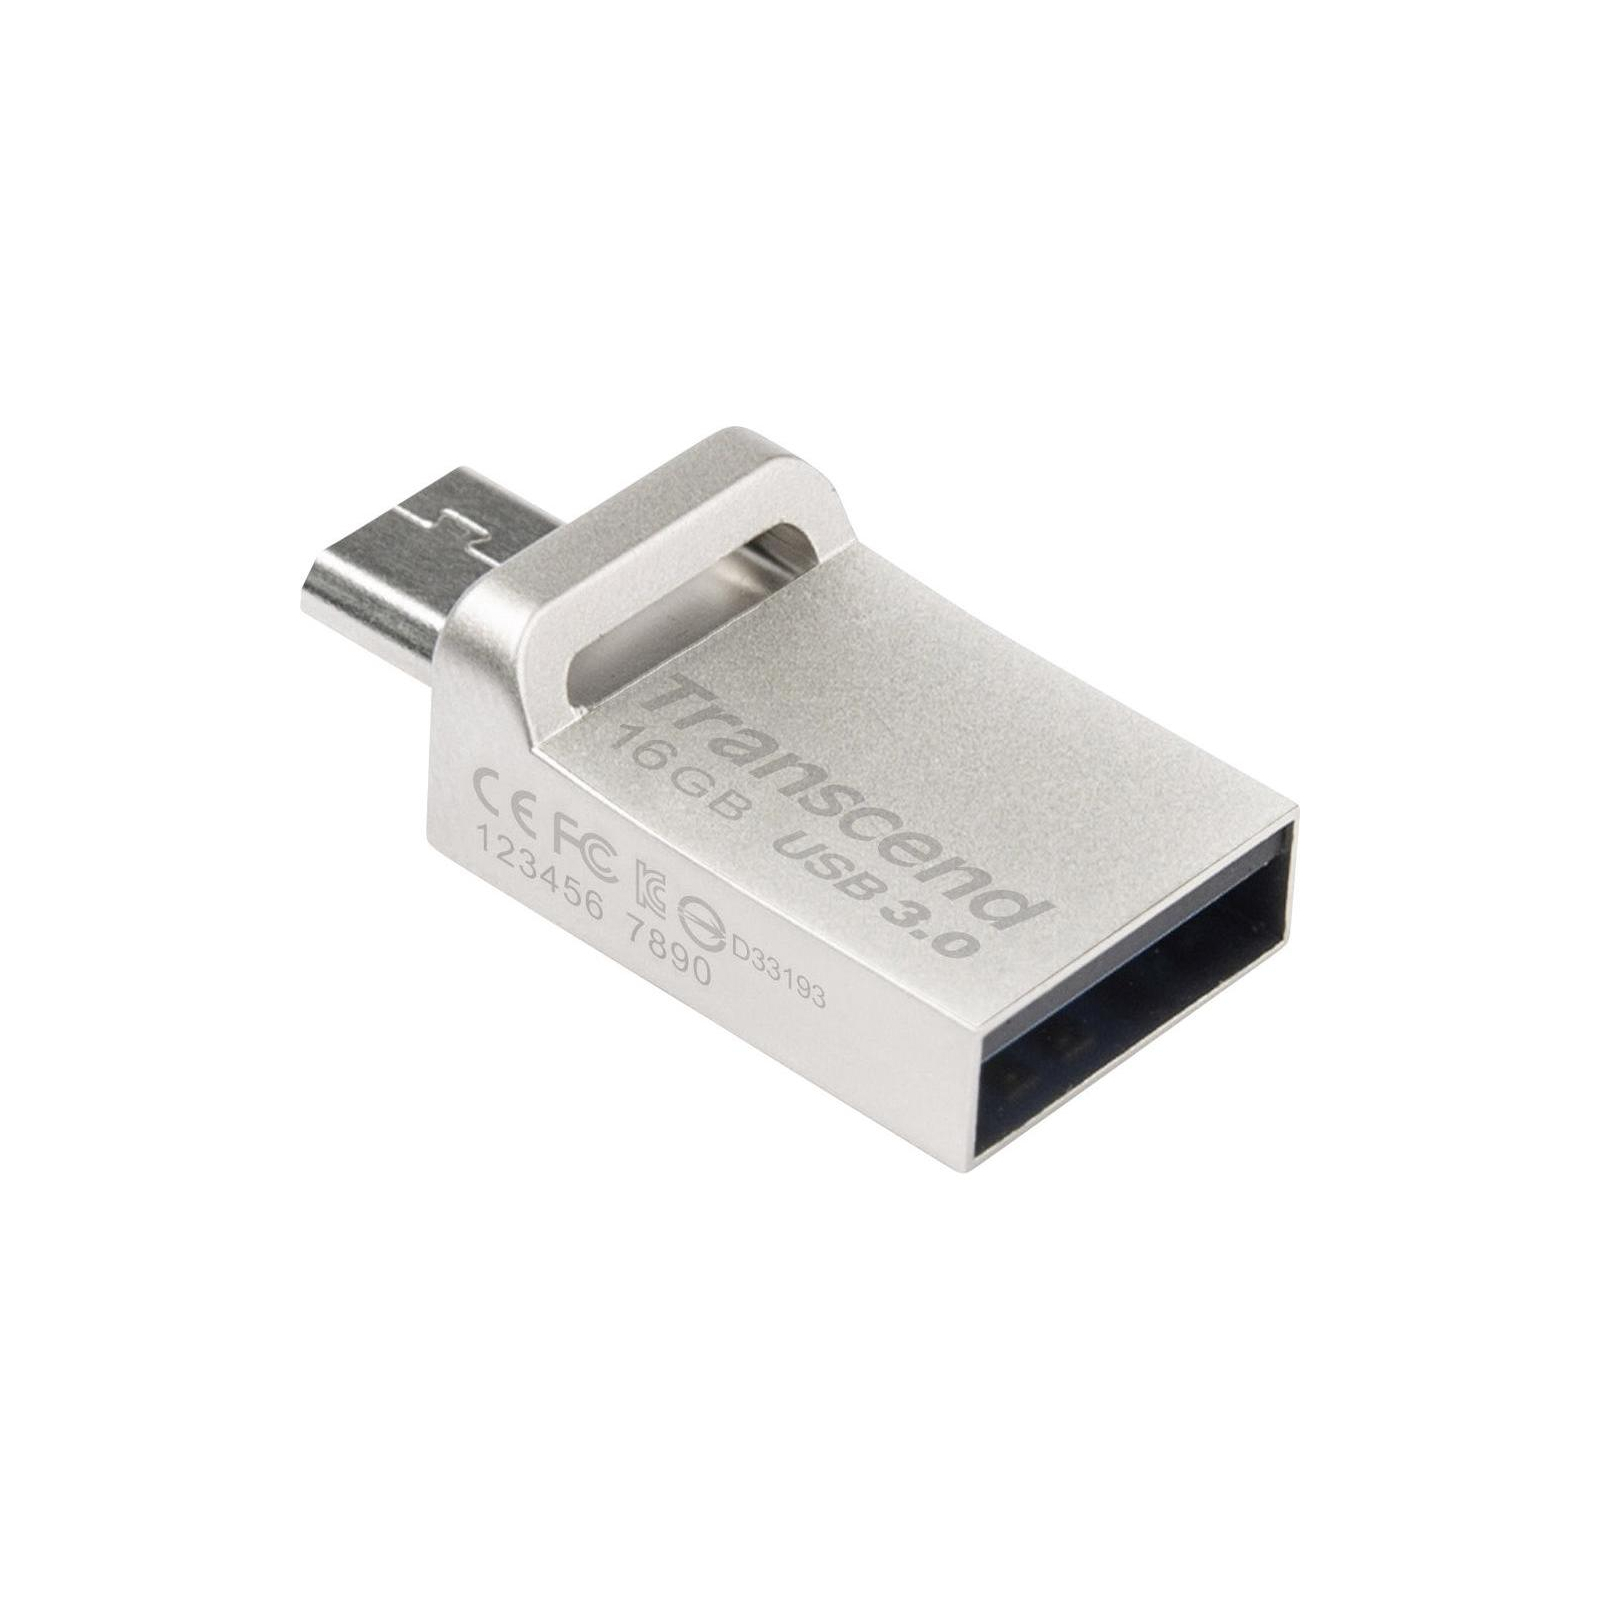 USB флеш накопитель Transcend 16GB JetFlash OTG 880 Metal Silver USB 3.0 (TS16GJF880S) изображение 3